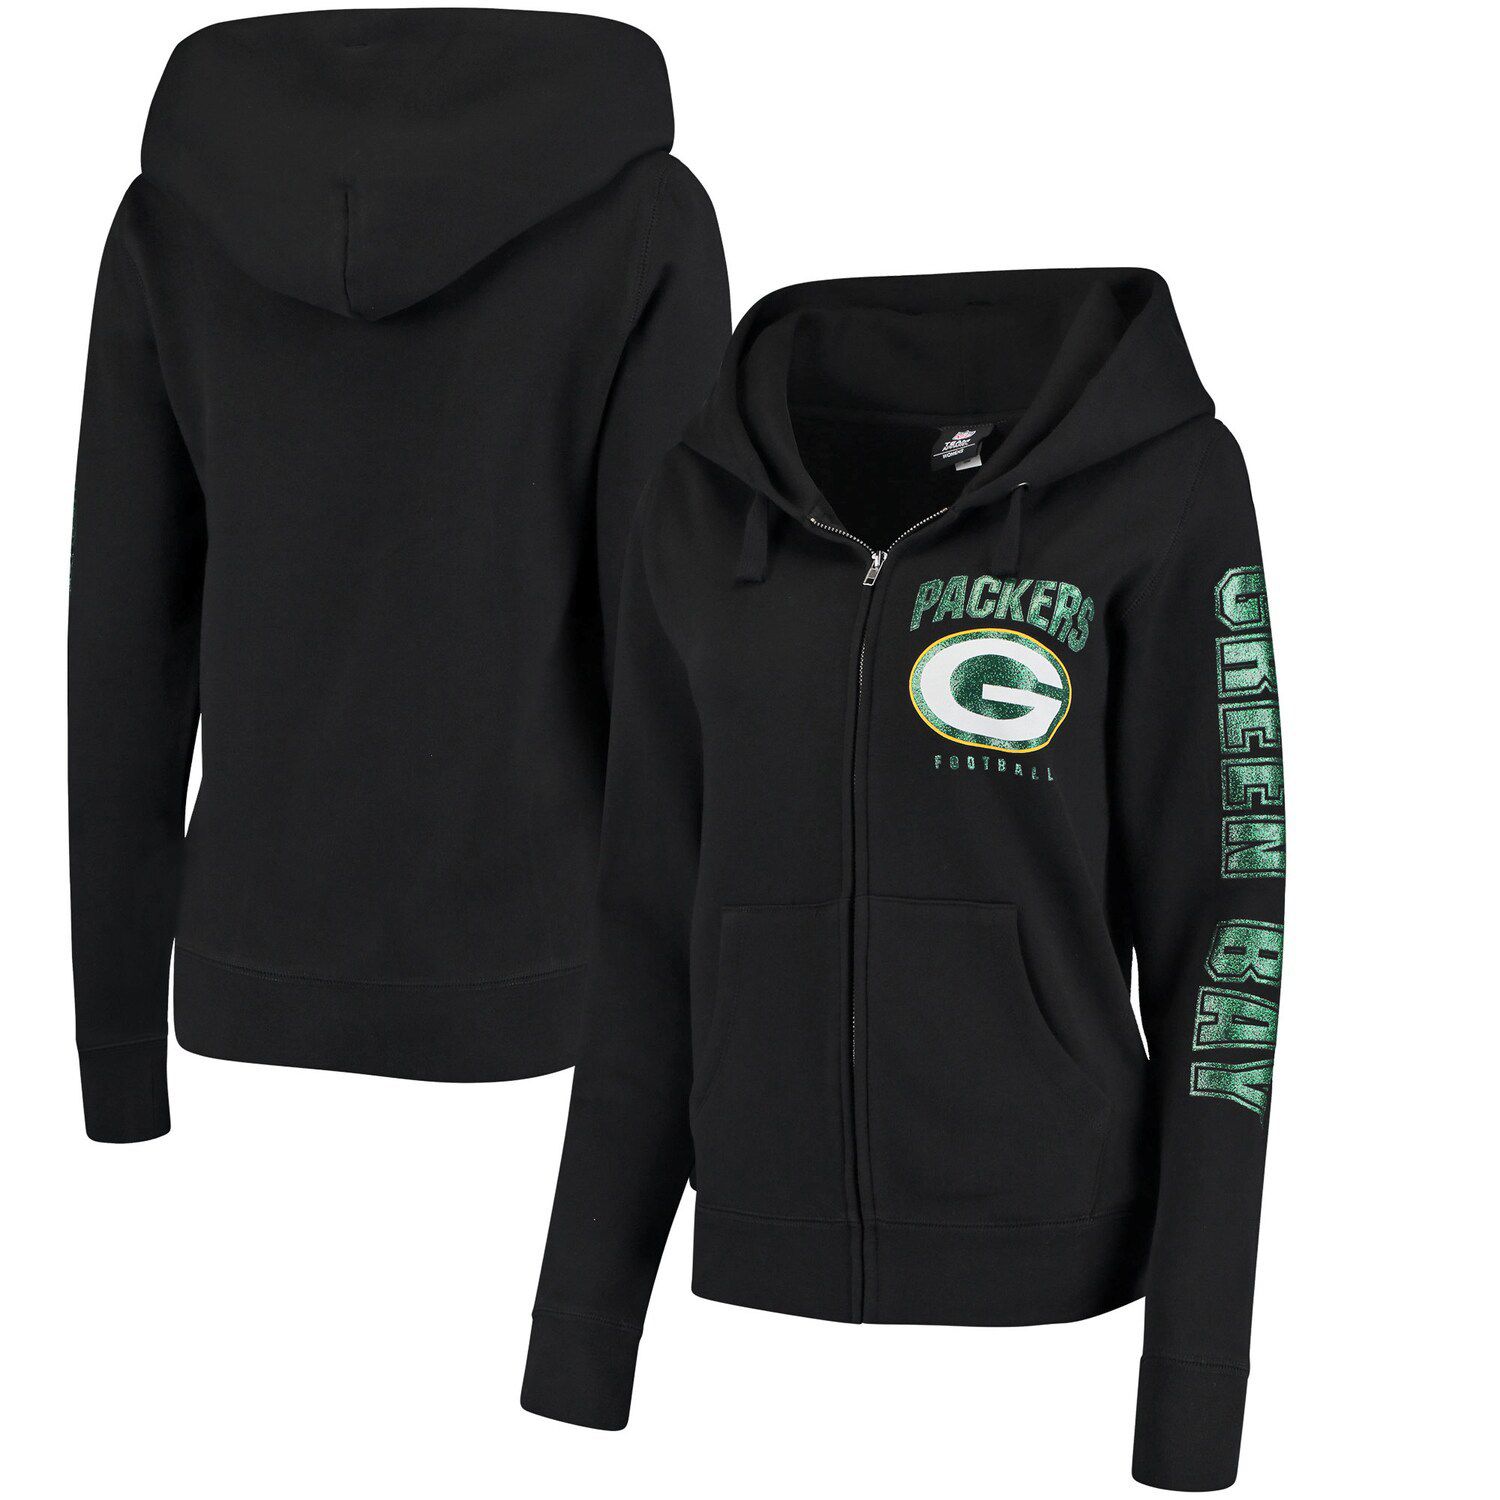 green bay packers hoodie 3x